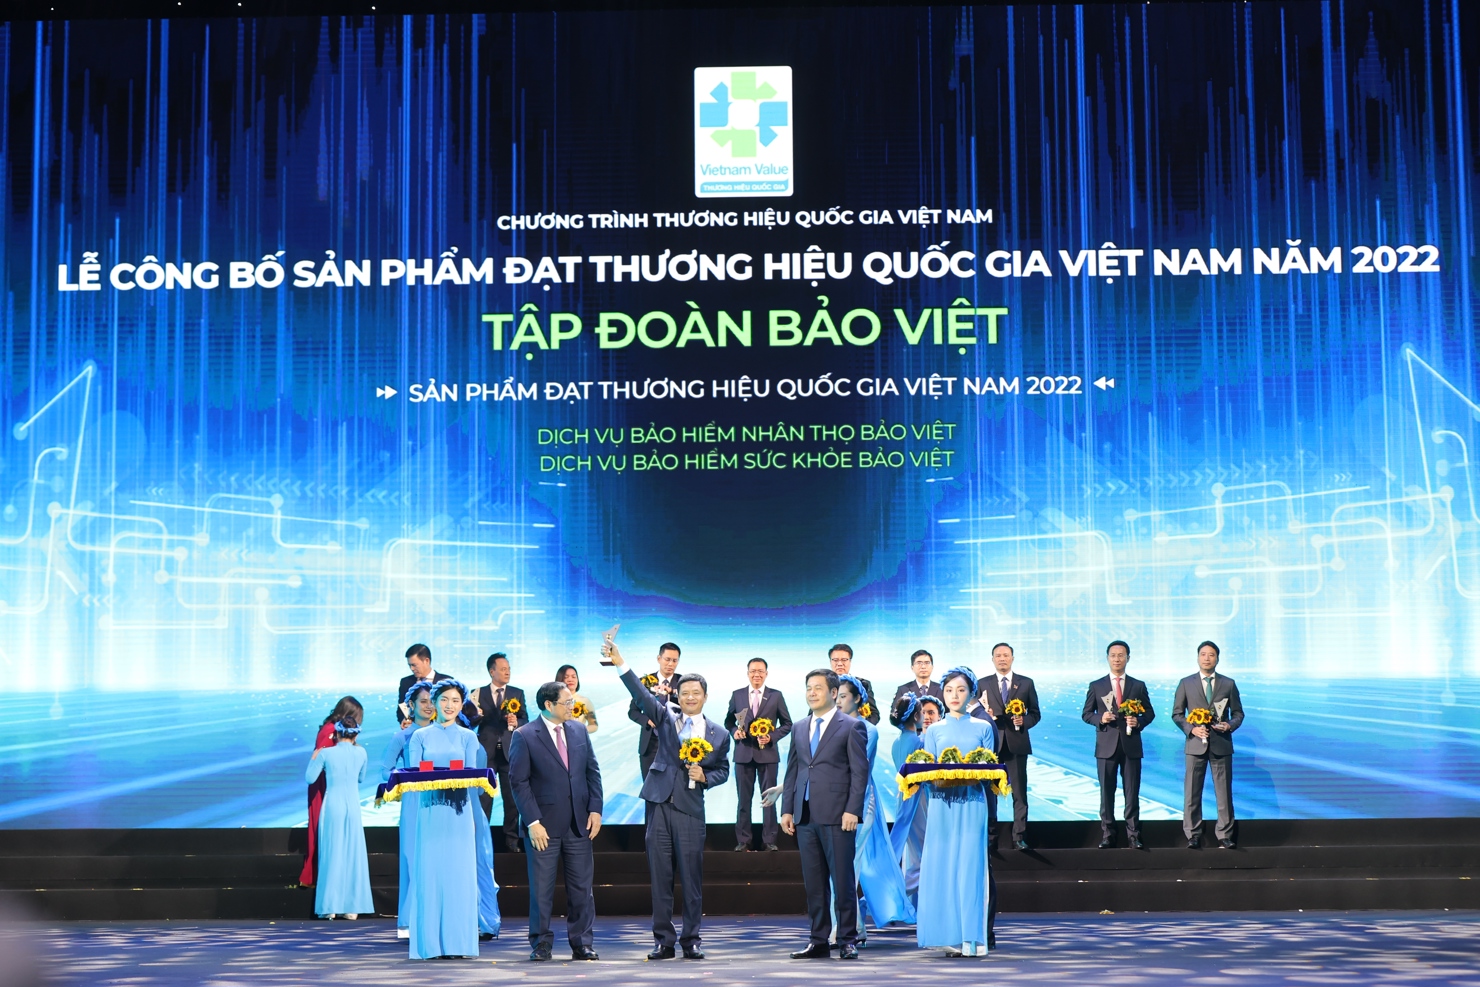 Tổng Giám đốc Phạm Ngọc Sơn – Tổng Công ty Bảo Việt Nhân thọ đại diện tập đoàn Bảo Việt nhận chứng nhận Thương hiệu Quốc gia năm 2022.